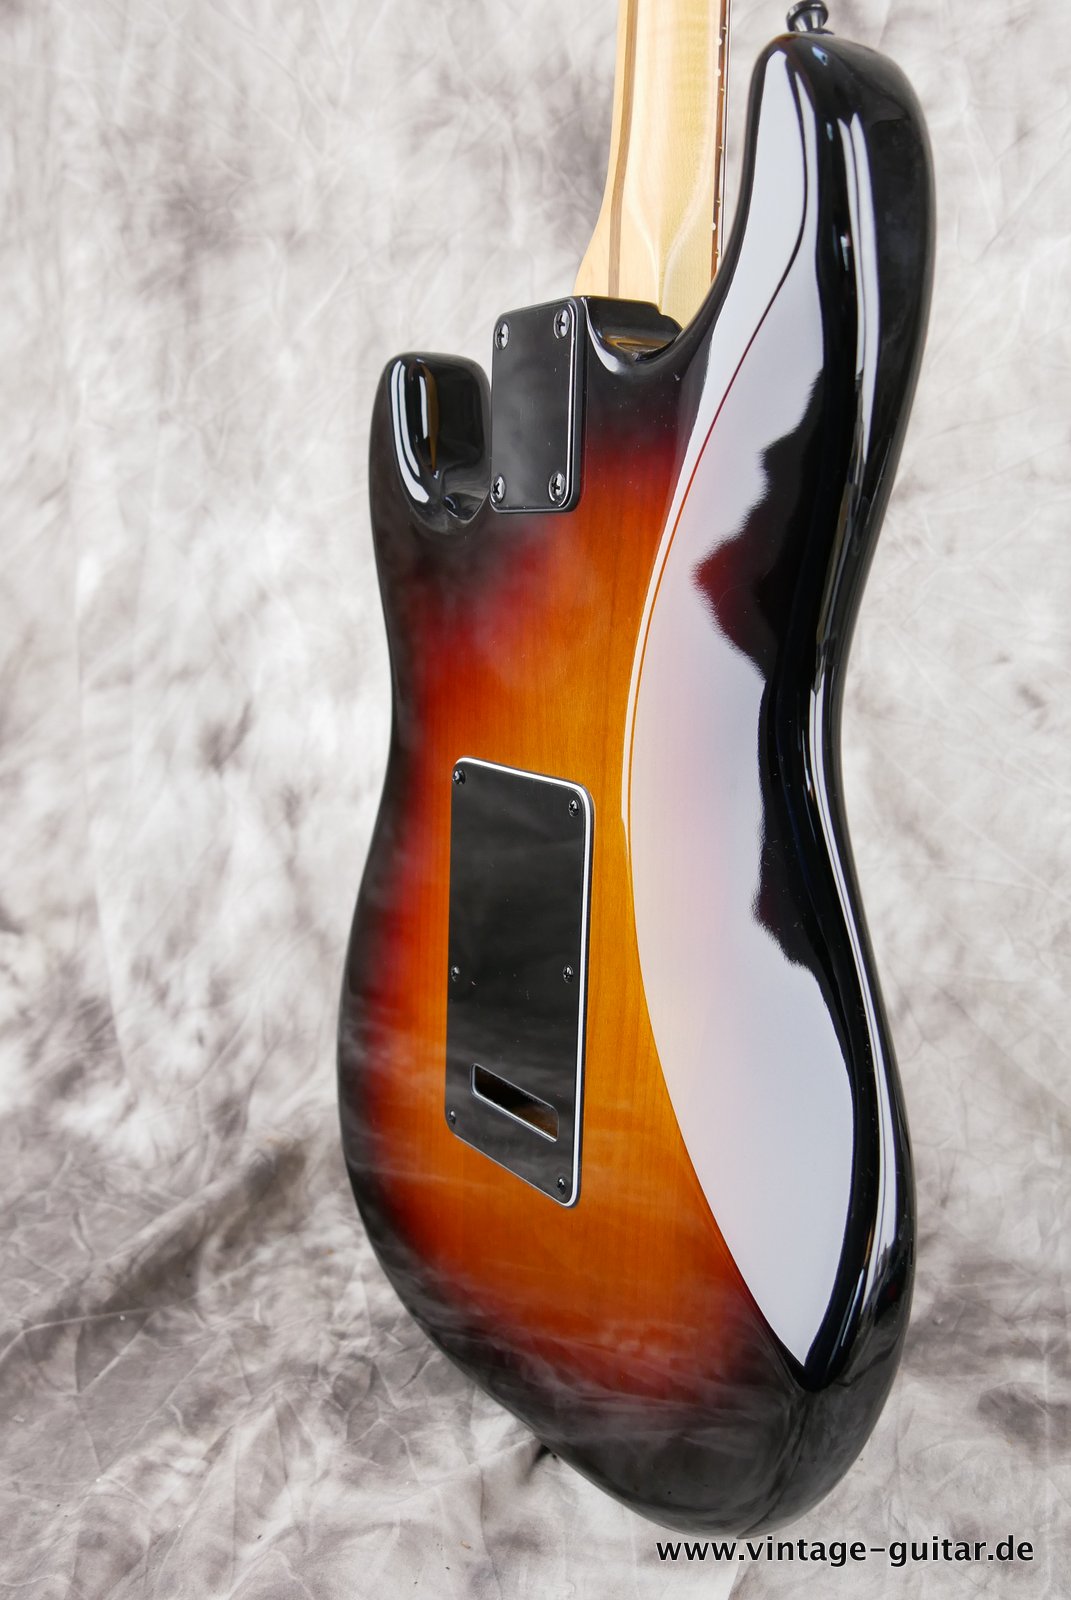 img/vintage/4765/Fender-Stratocaster-2014-US-Standard-black-hardware-007.JPG